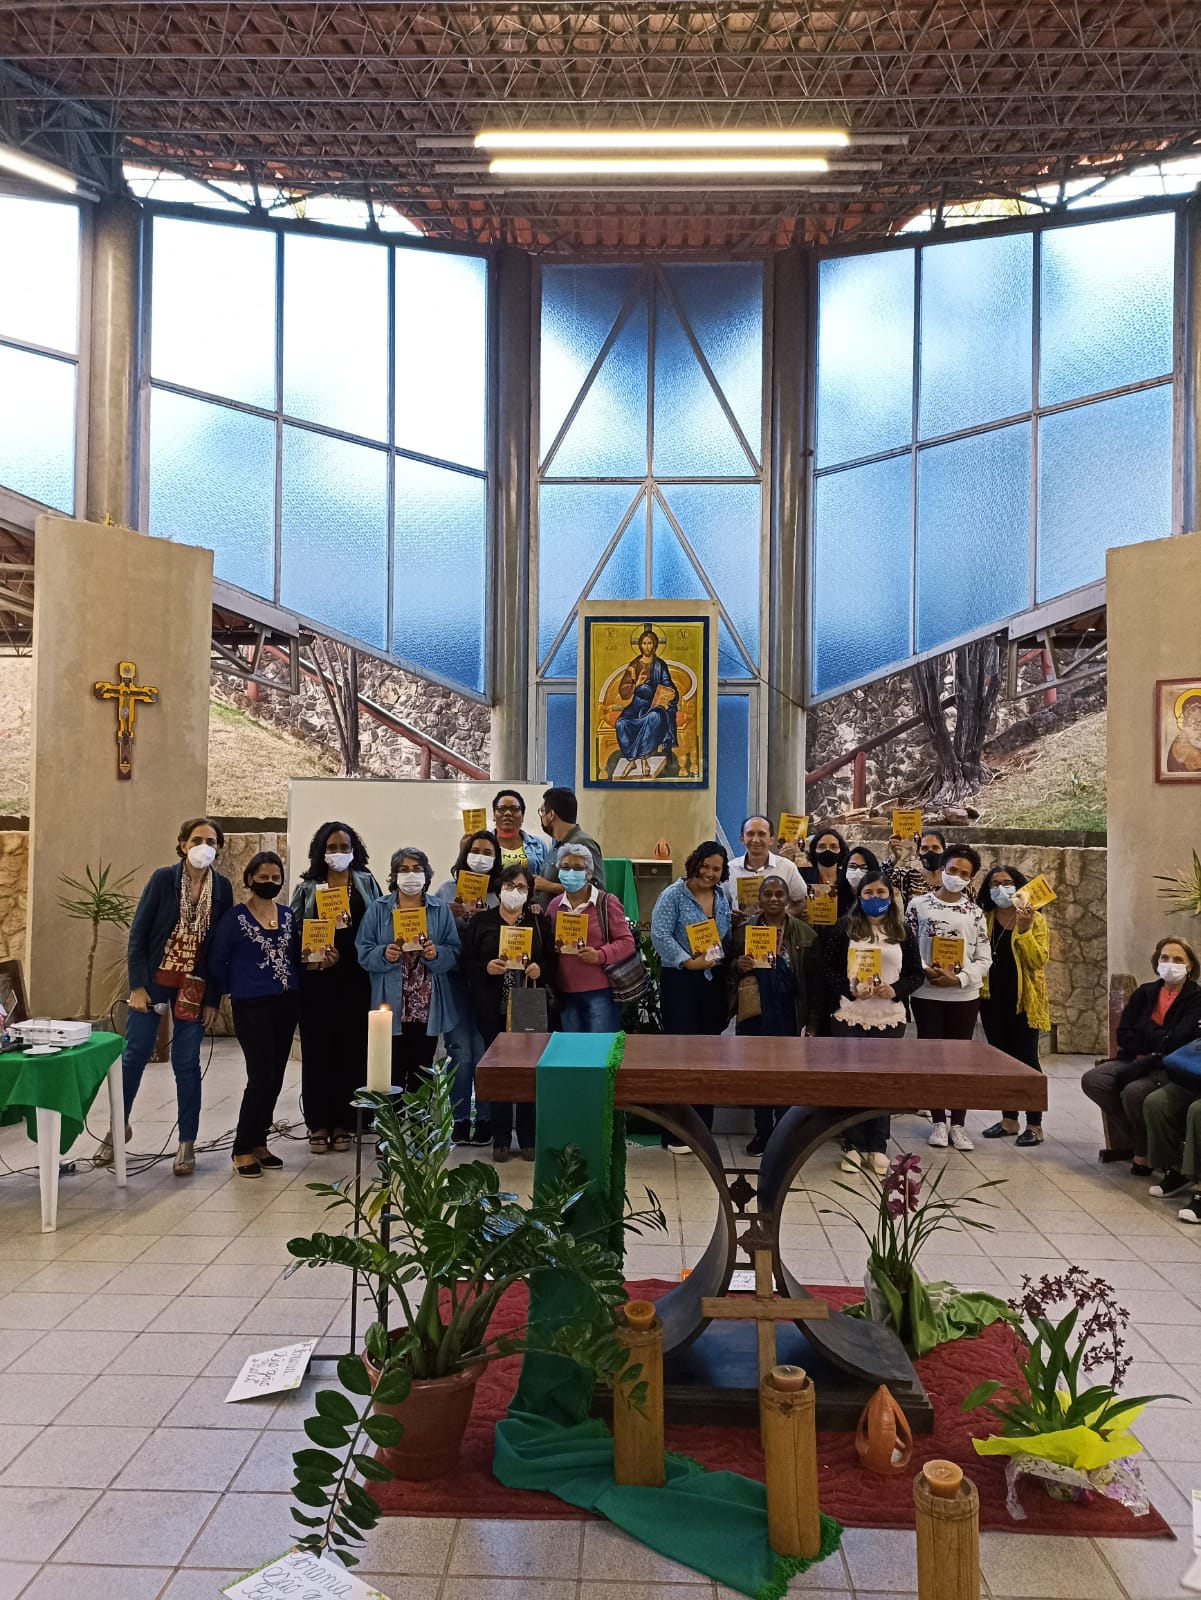 Rense promove Encontro de Catequistas na Paróquia Nossa Senhora Rainha da Paz